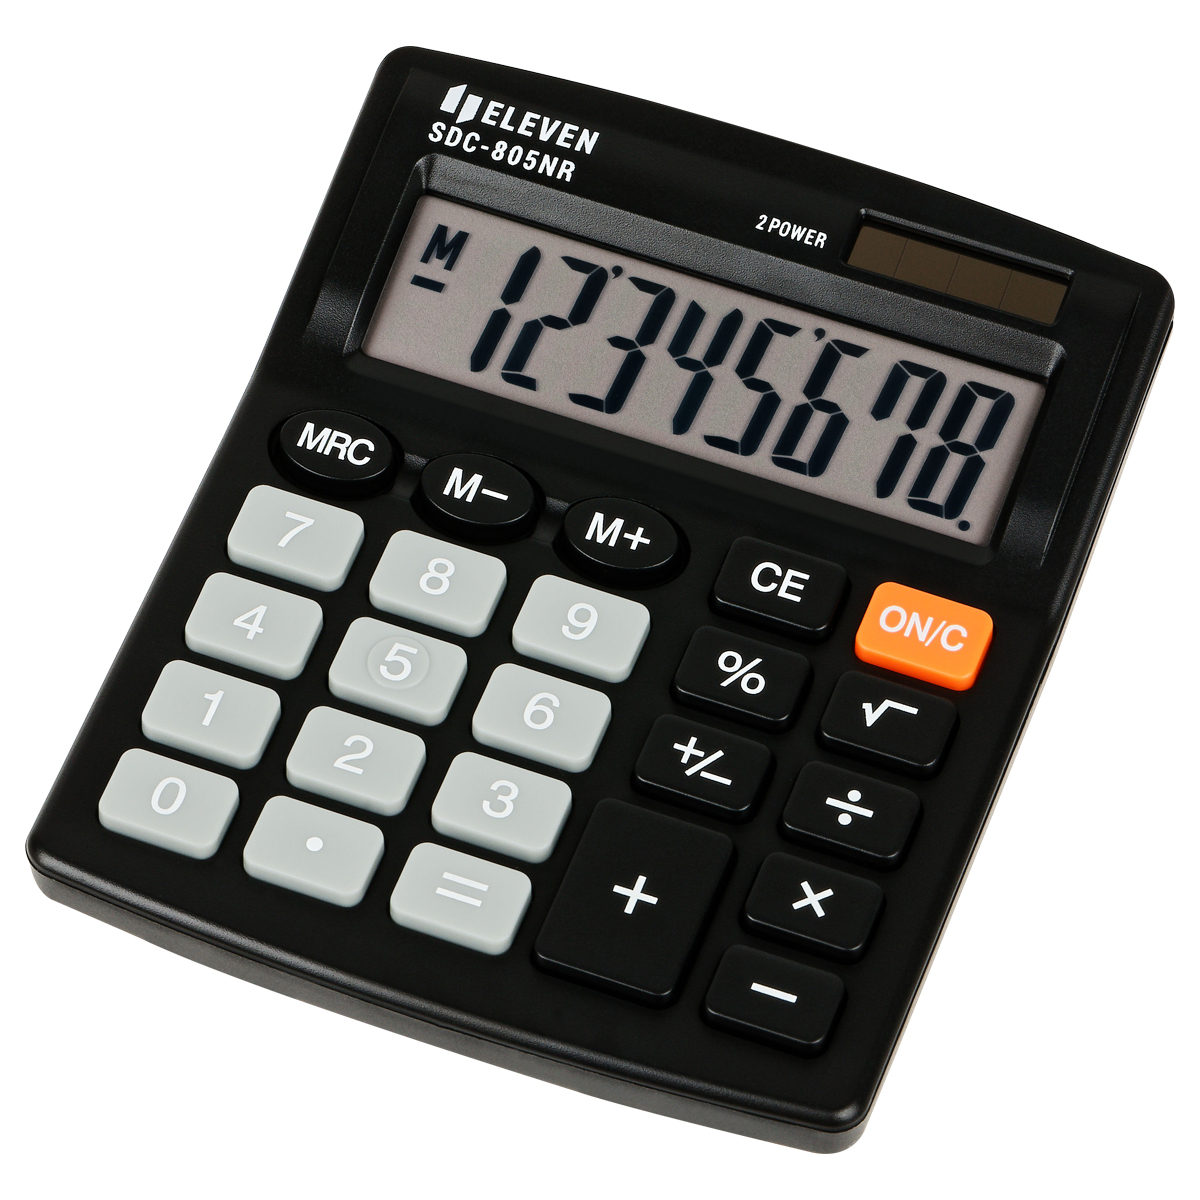 Калькулятор настольный Eleven SDC-805NR, 8 разр., двойное питание, 105*120*21мм, черный